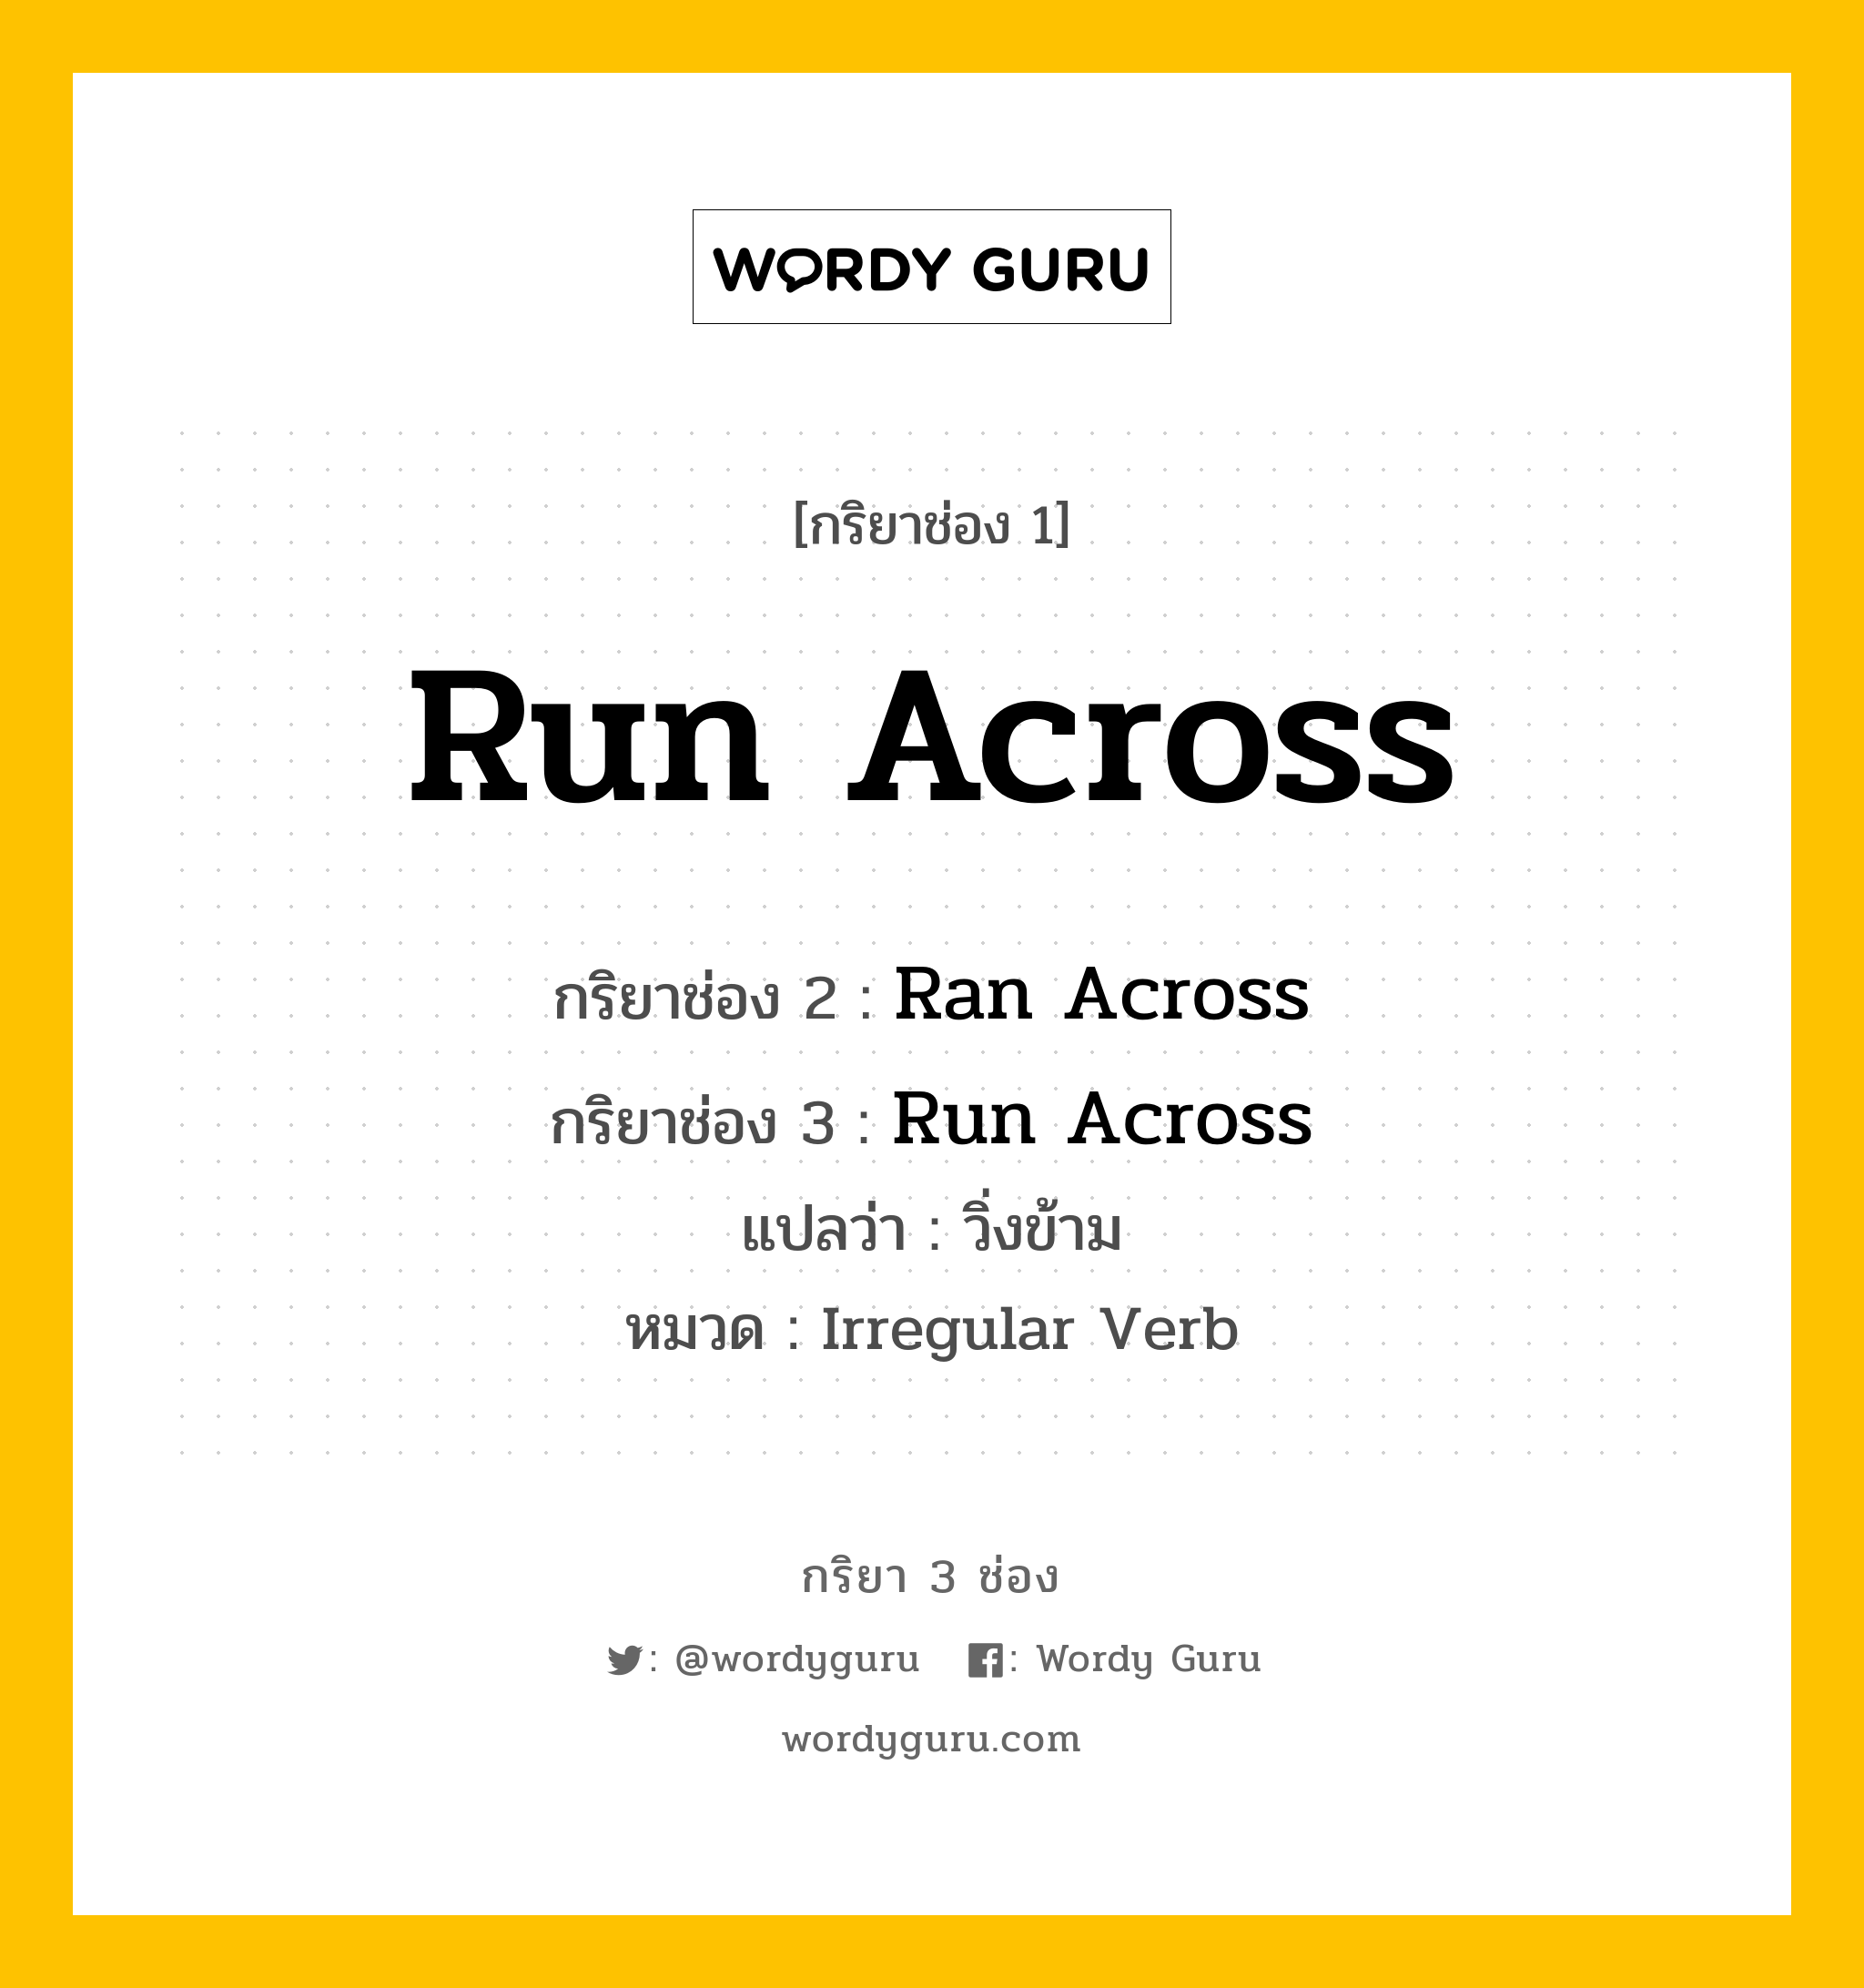 กริยา 3 ช่อง: Run Across ช่อง 2 Run Across ช่อง 3 คืออะไร, กริยาช่อง 1 Run Across กริยาช่อง 2 Ran Across กริยาช่อง 3 Run Across แปลว่า วิ่งข้าม หมวด Irregular Verb หมวด Irregular Verb